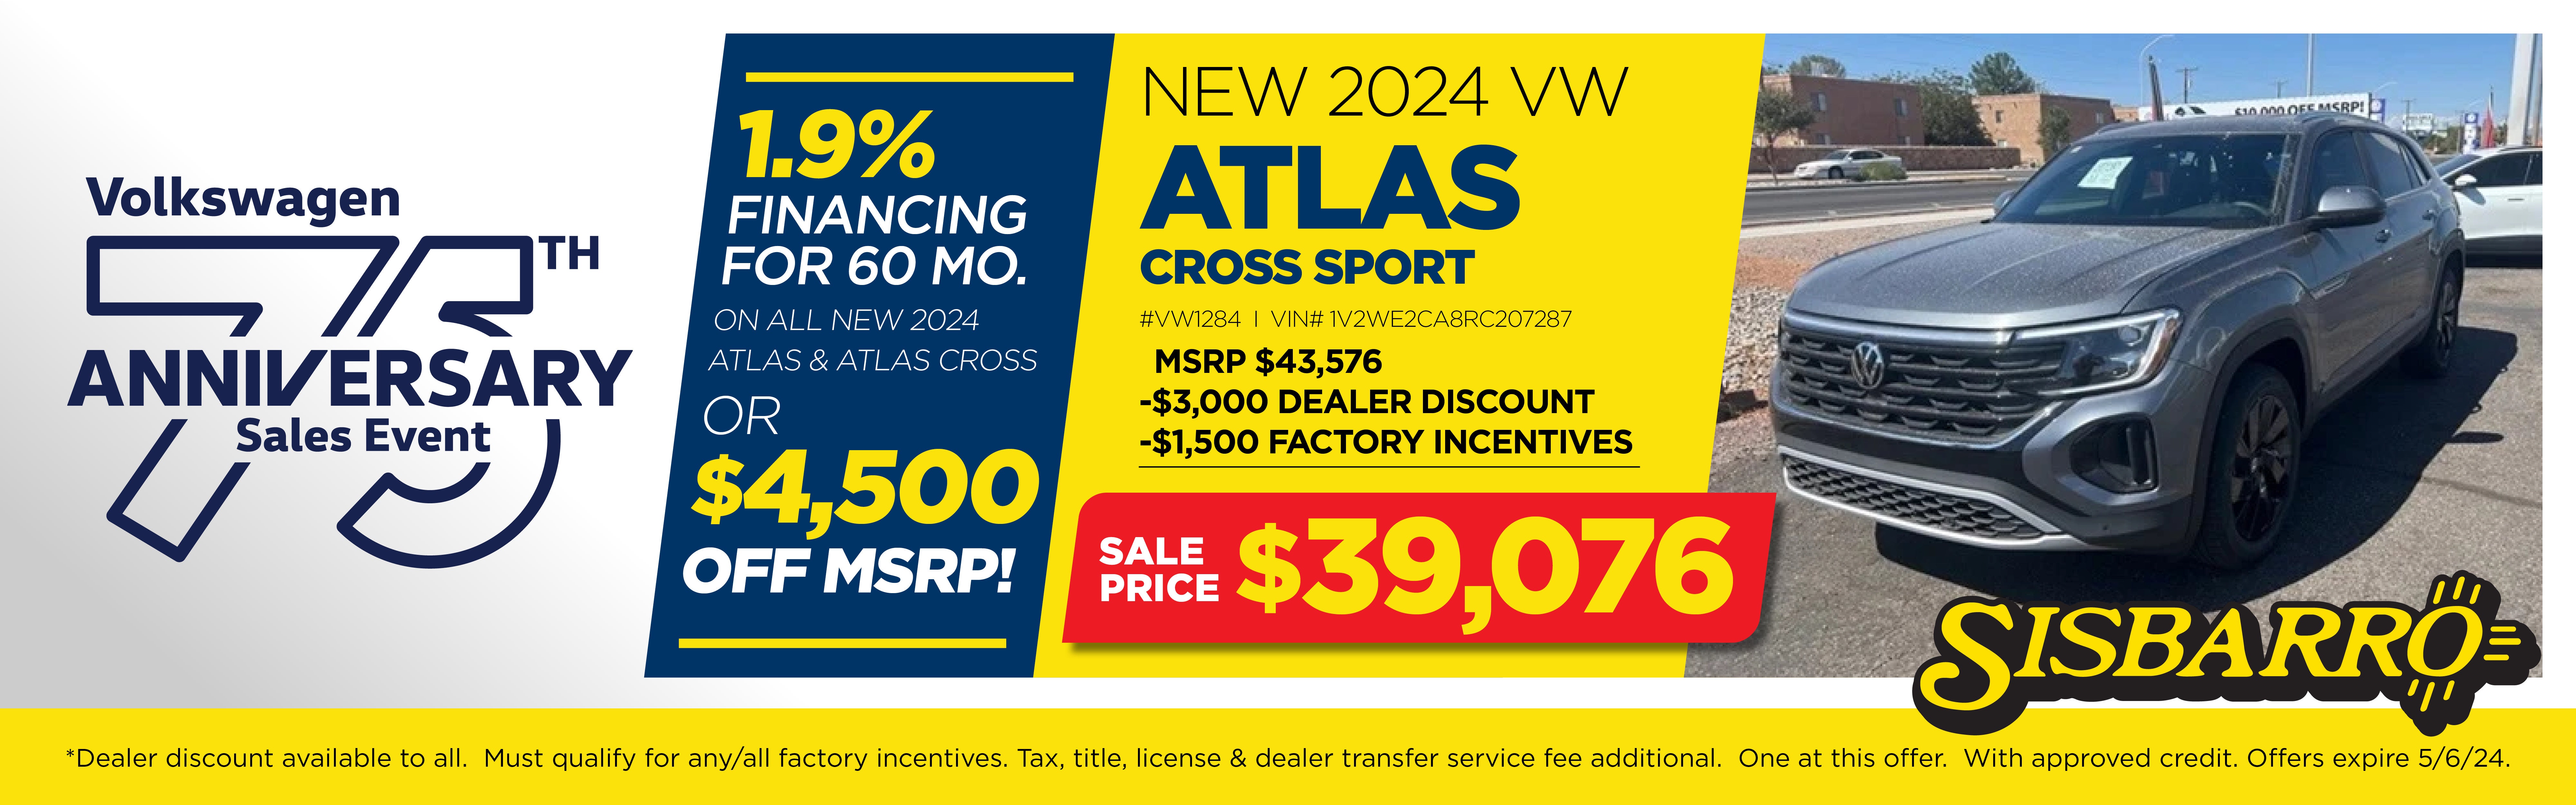 2024 VW Atlas Cross Sport